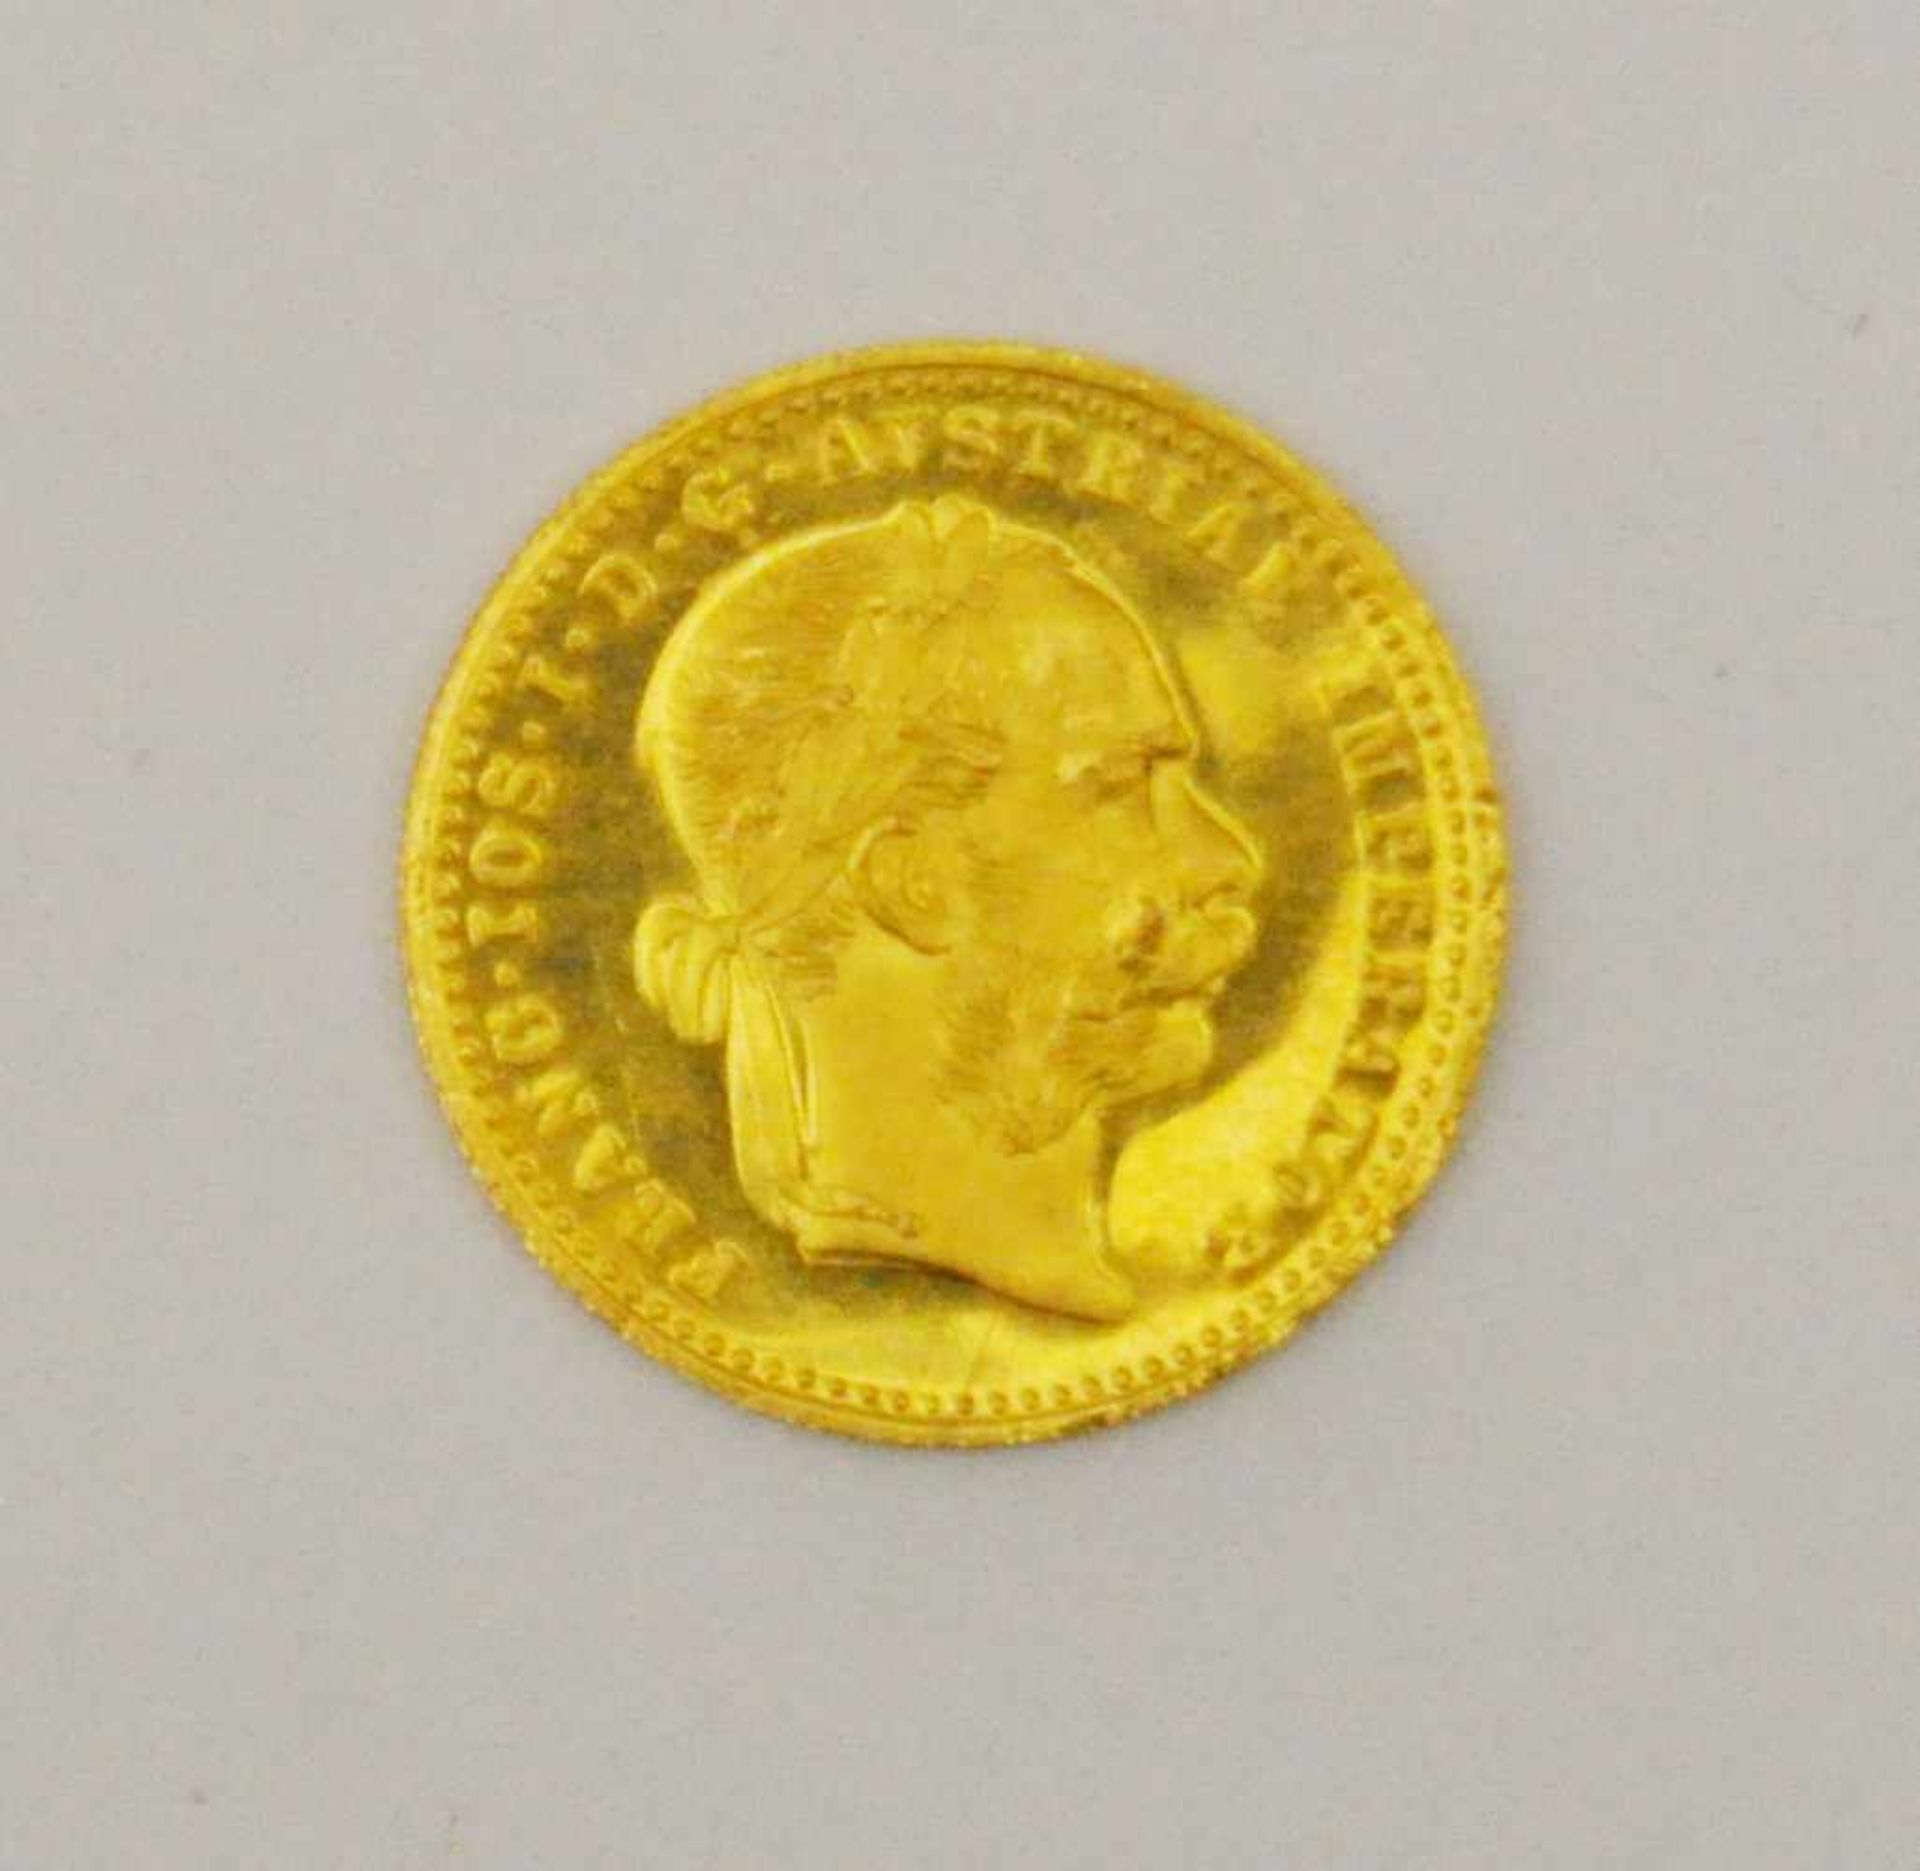 Goldmünze,1 Dukaten, Franz Josef, Gold 900 fein, Gewicht 3,44 g